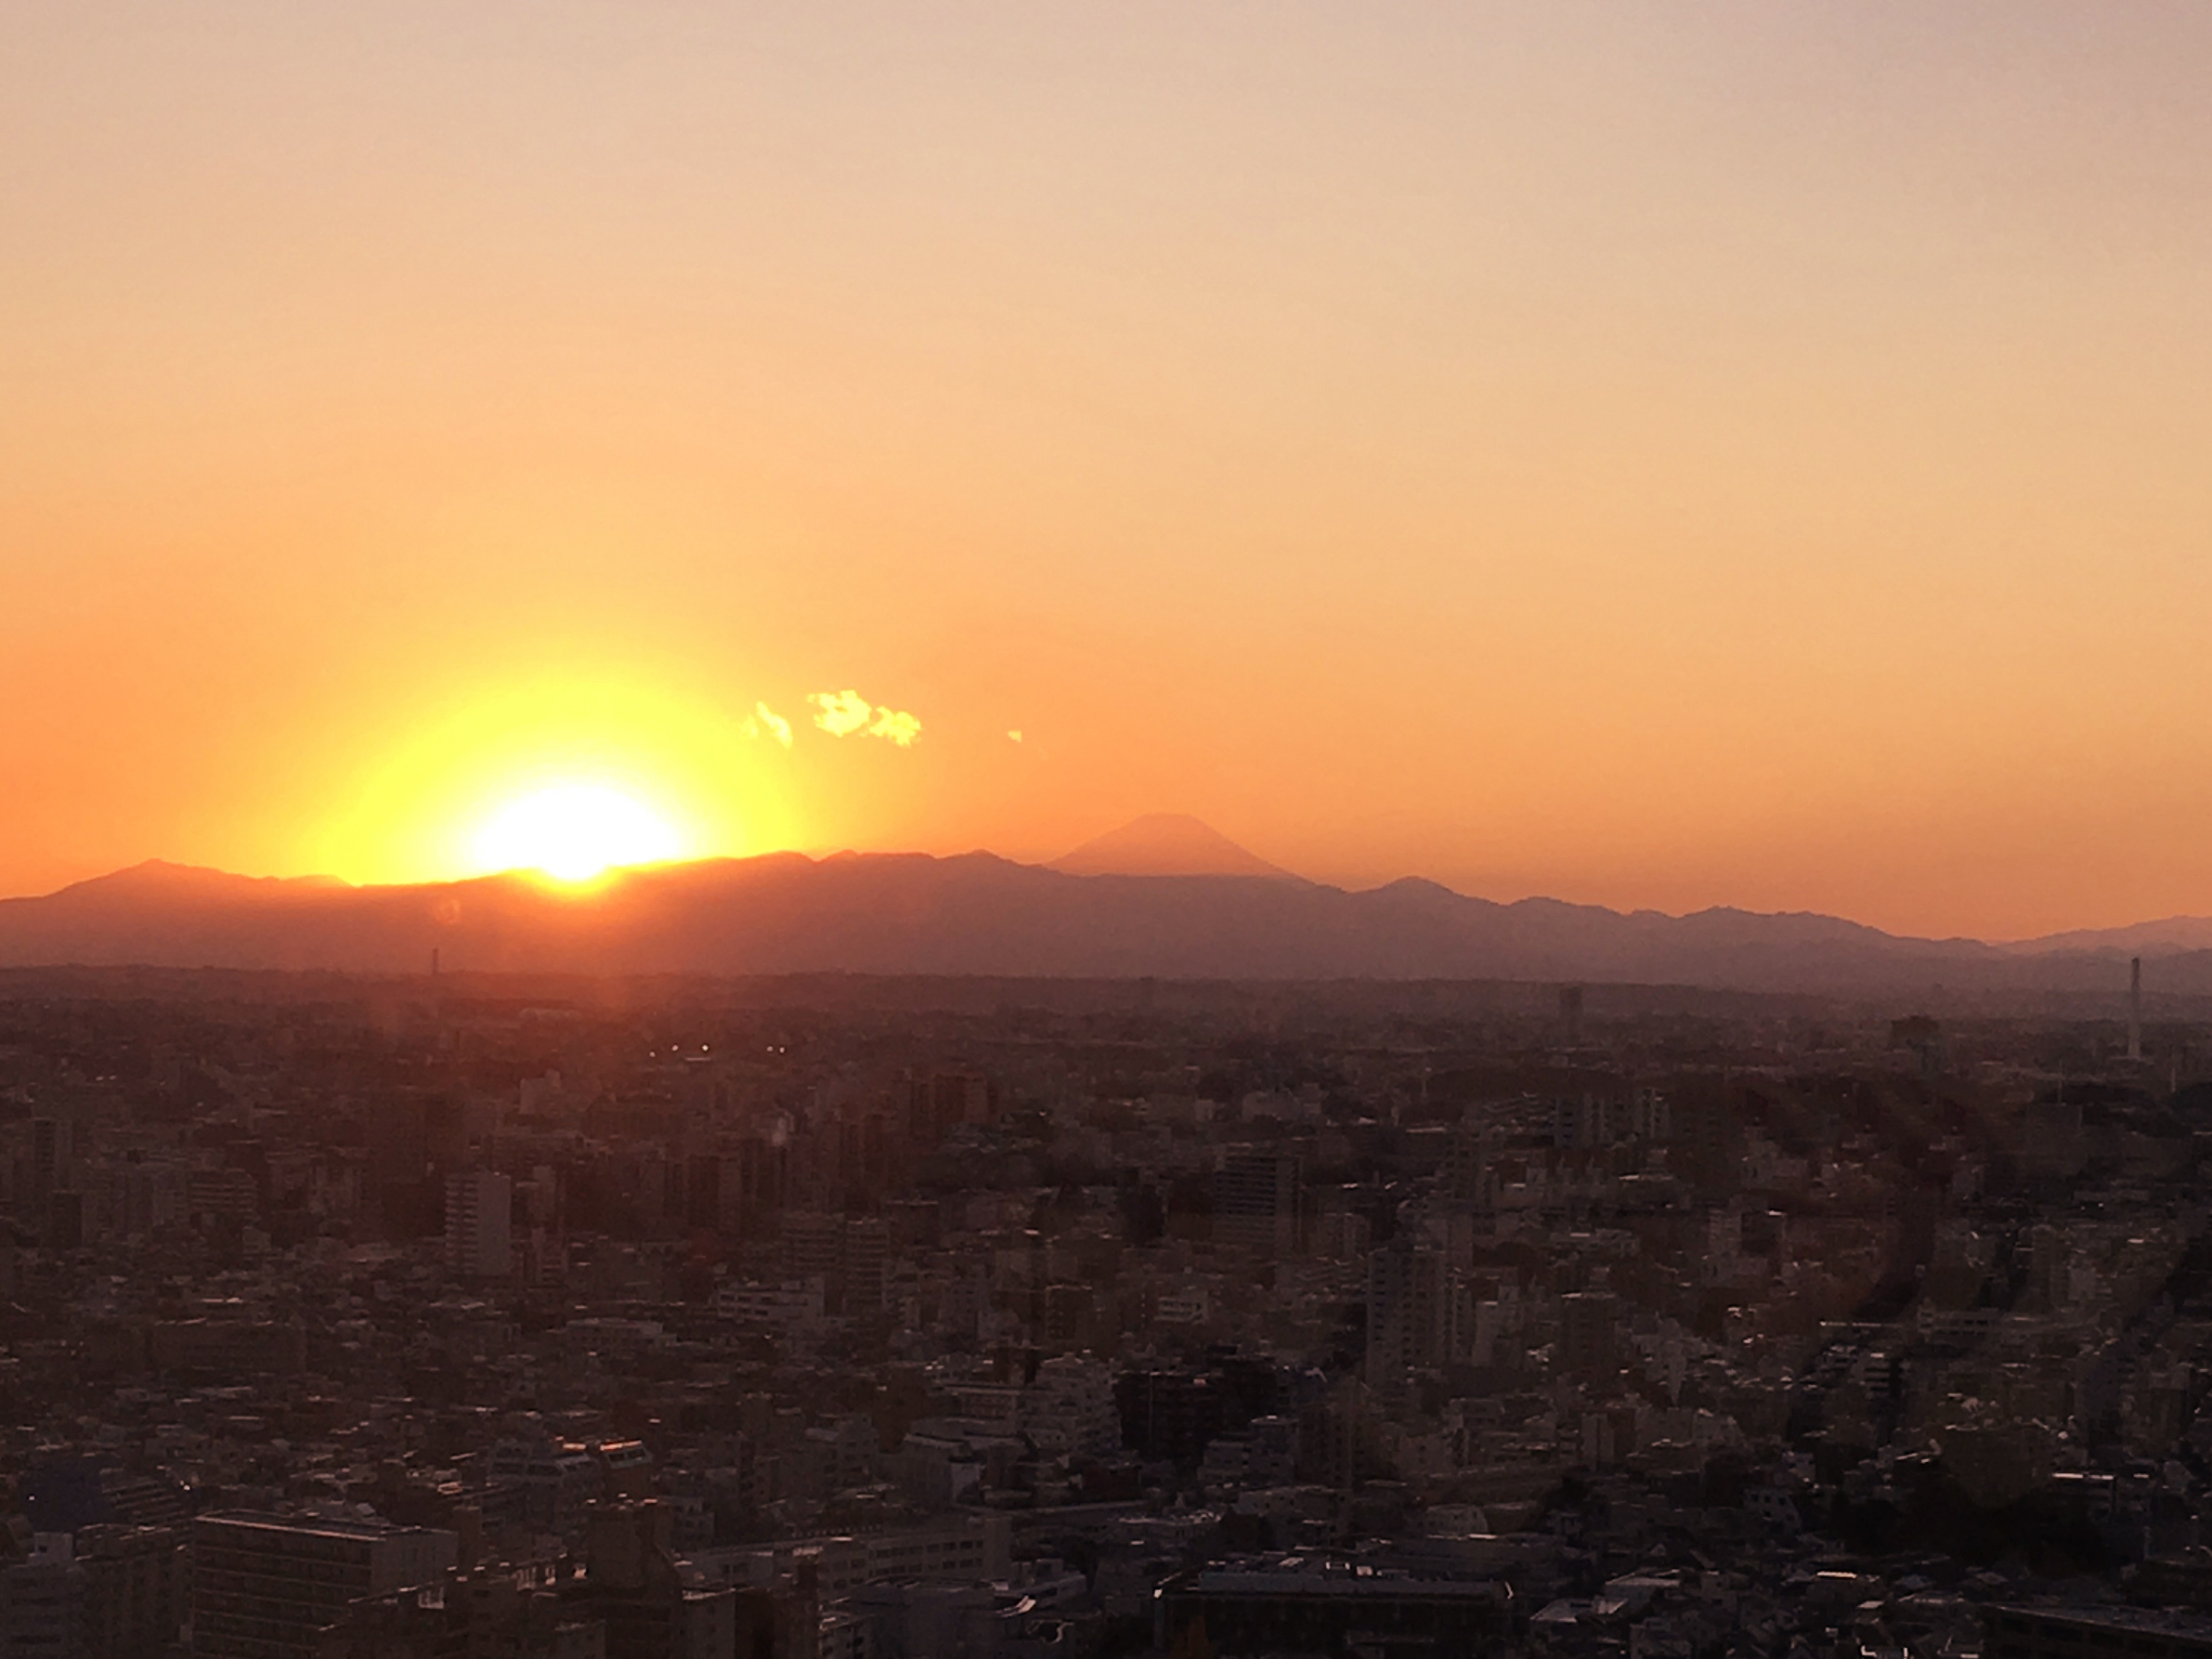 社内から見える夕陽。
富士山が綺麗に見えリフレッシュできます